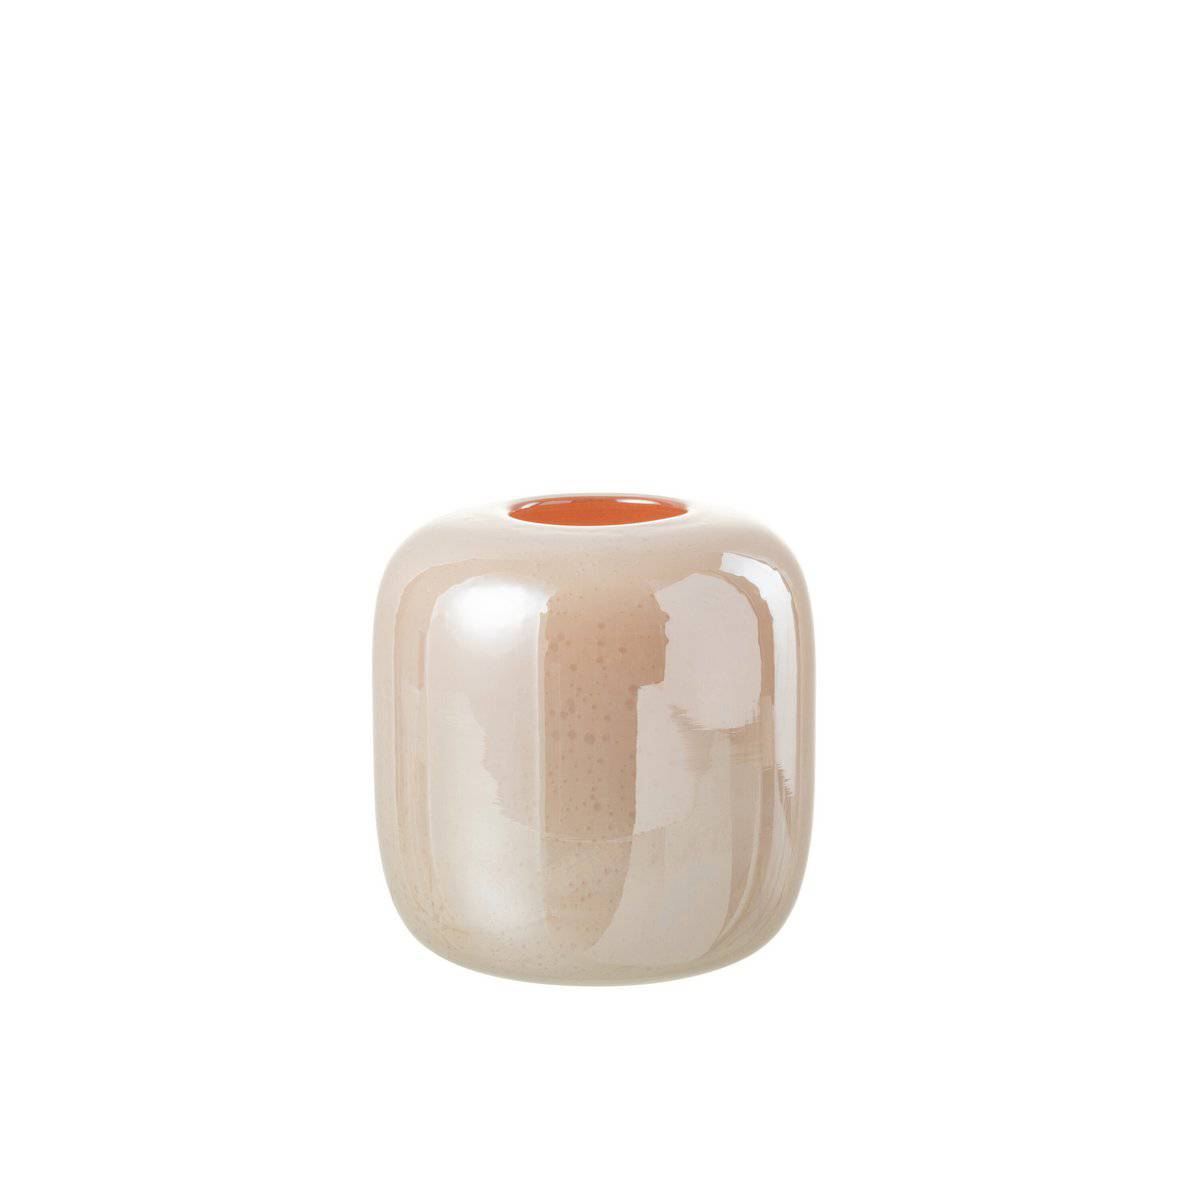 J-Line Vase Julien Glass Orange/Pink Small - 18 cm high